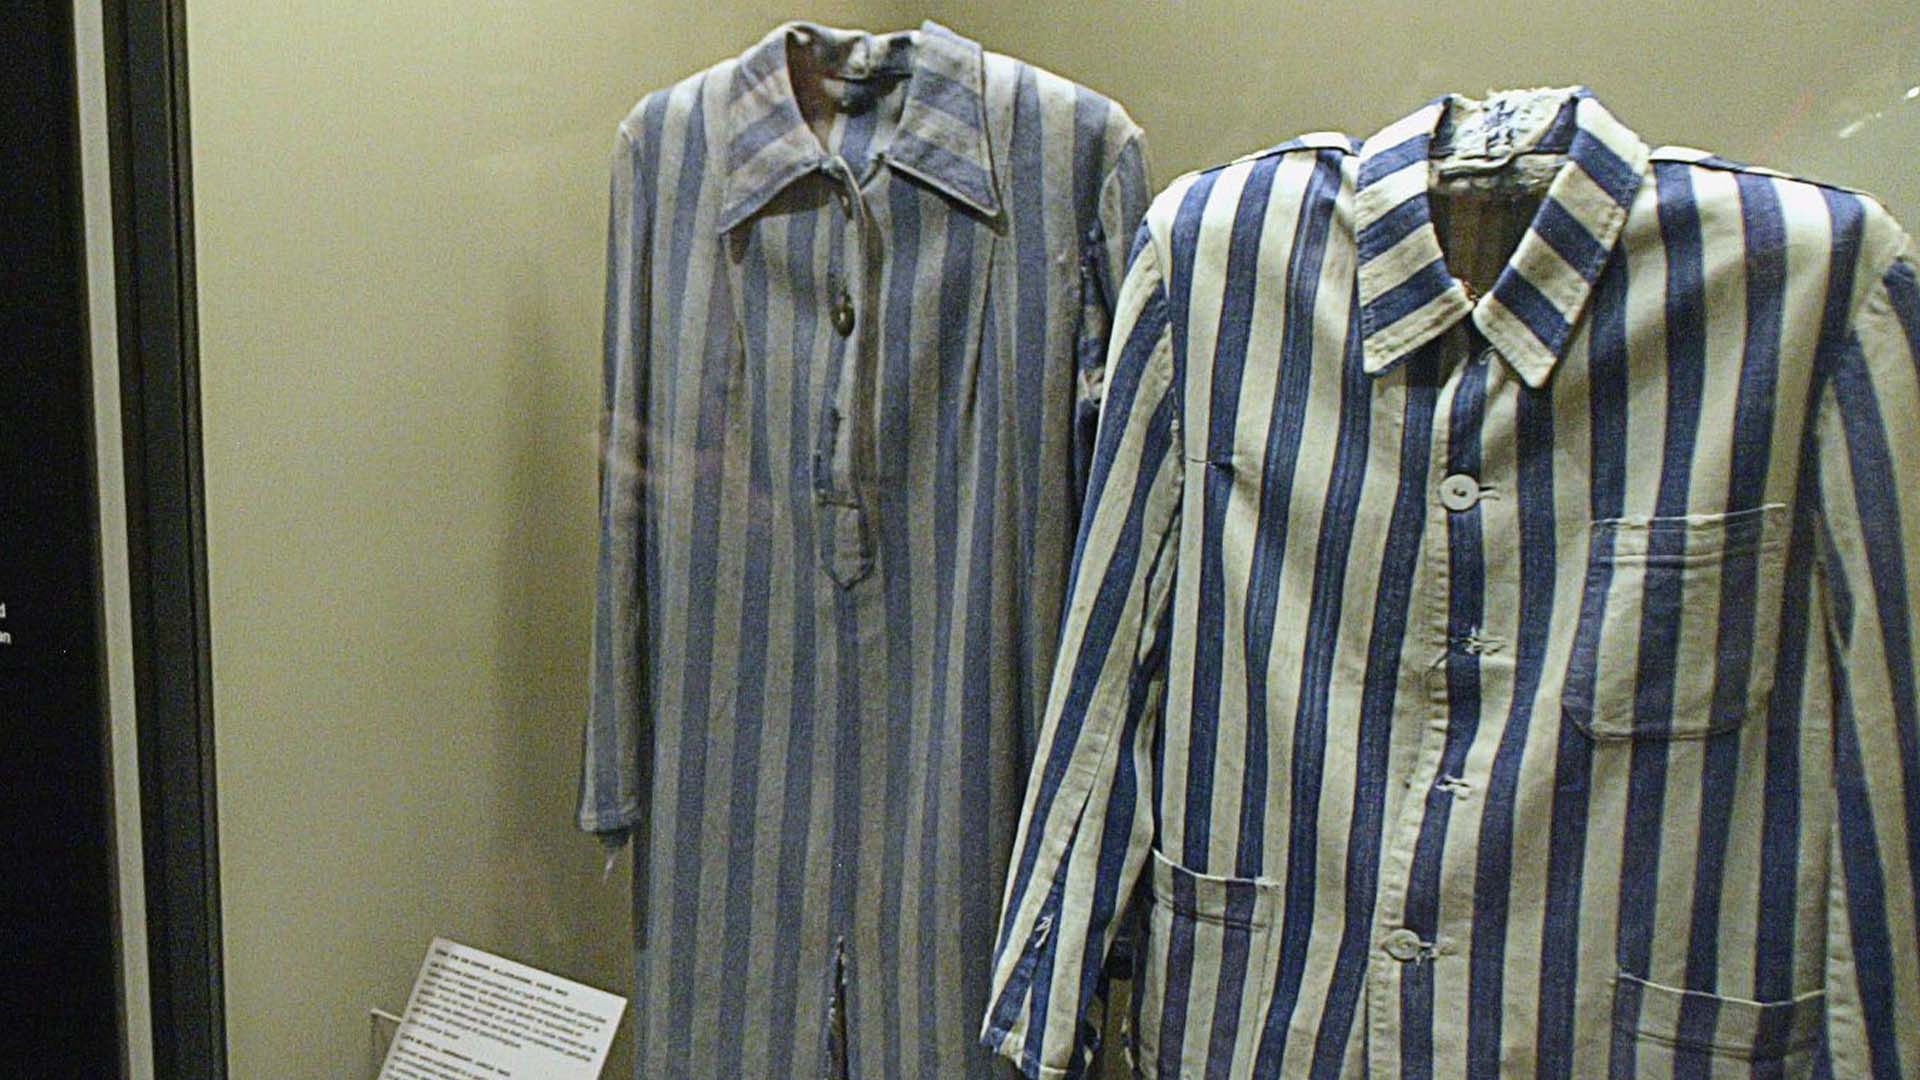 Une exposition d'uniformes de prisonniers est présentée au Musée de l'Holocauste à Montréal, le lundi 24 janvier 2005.